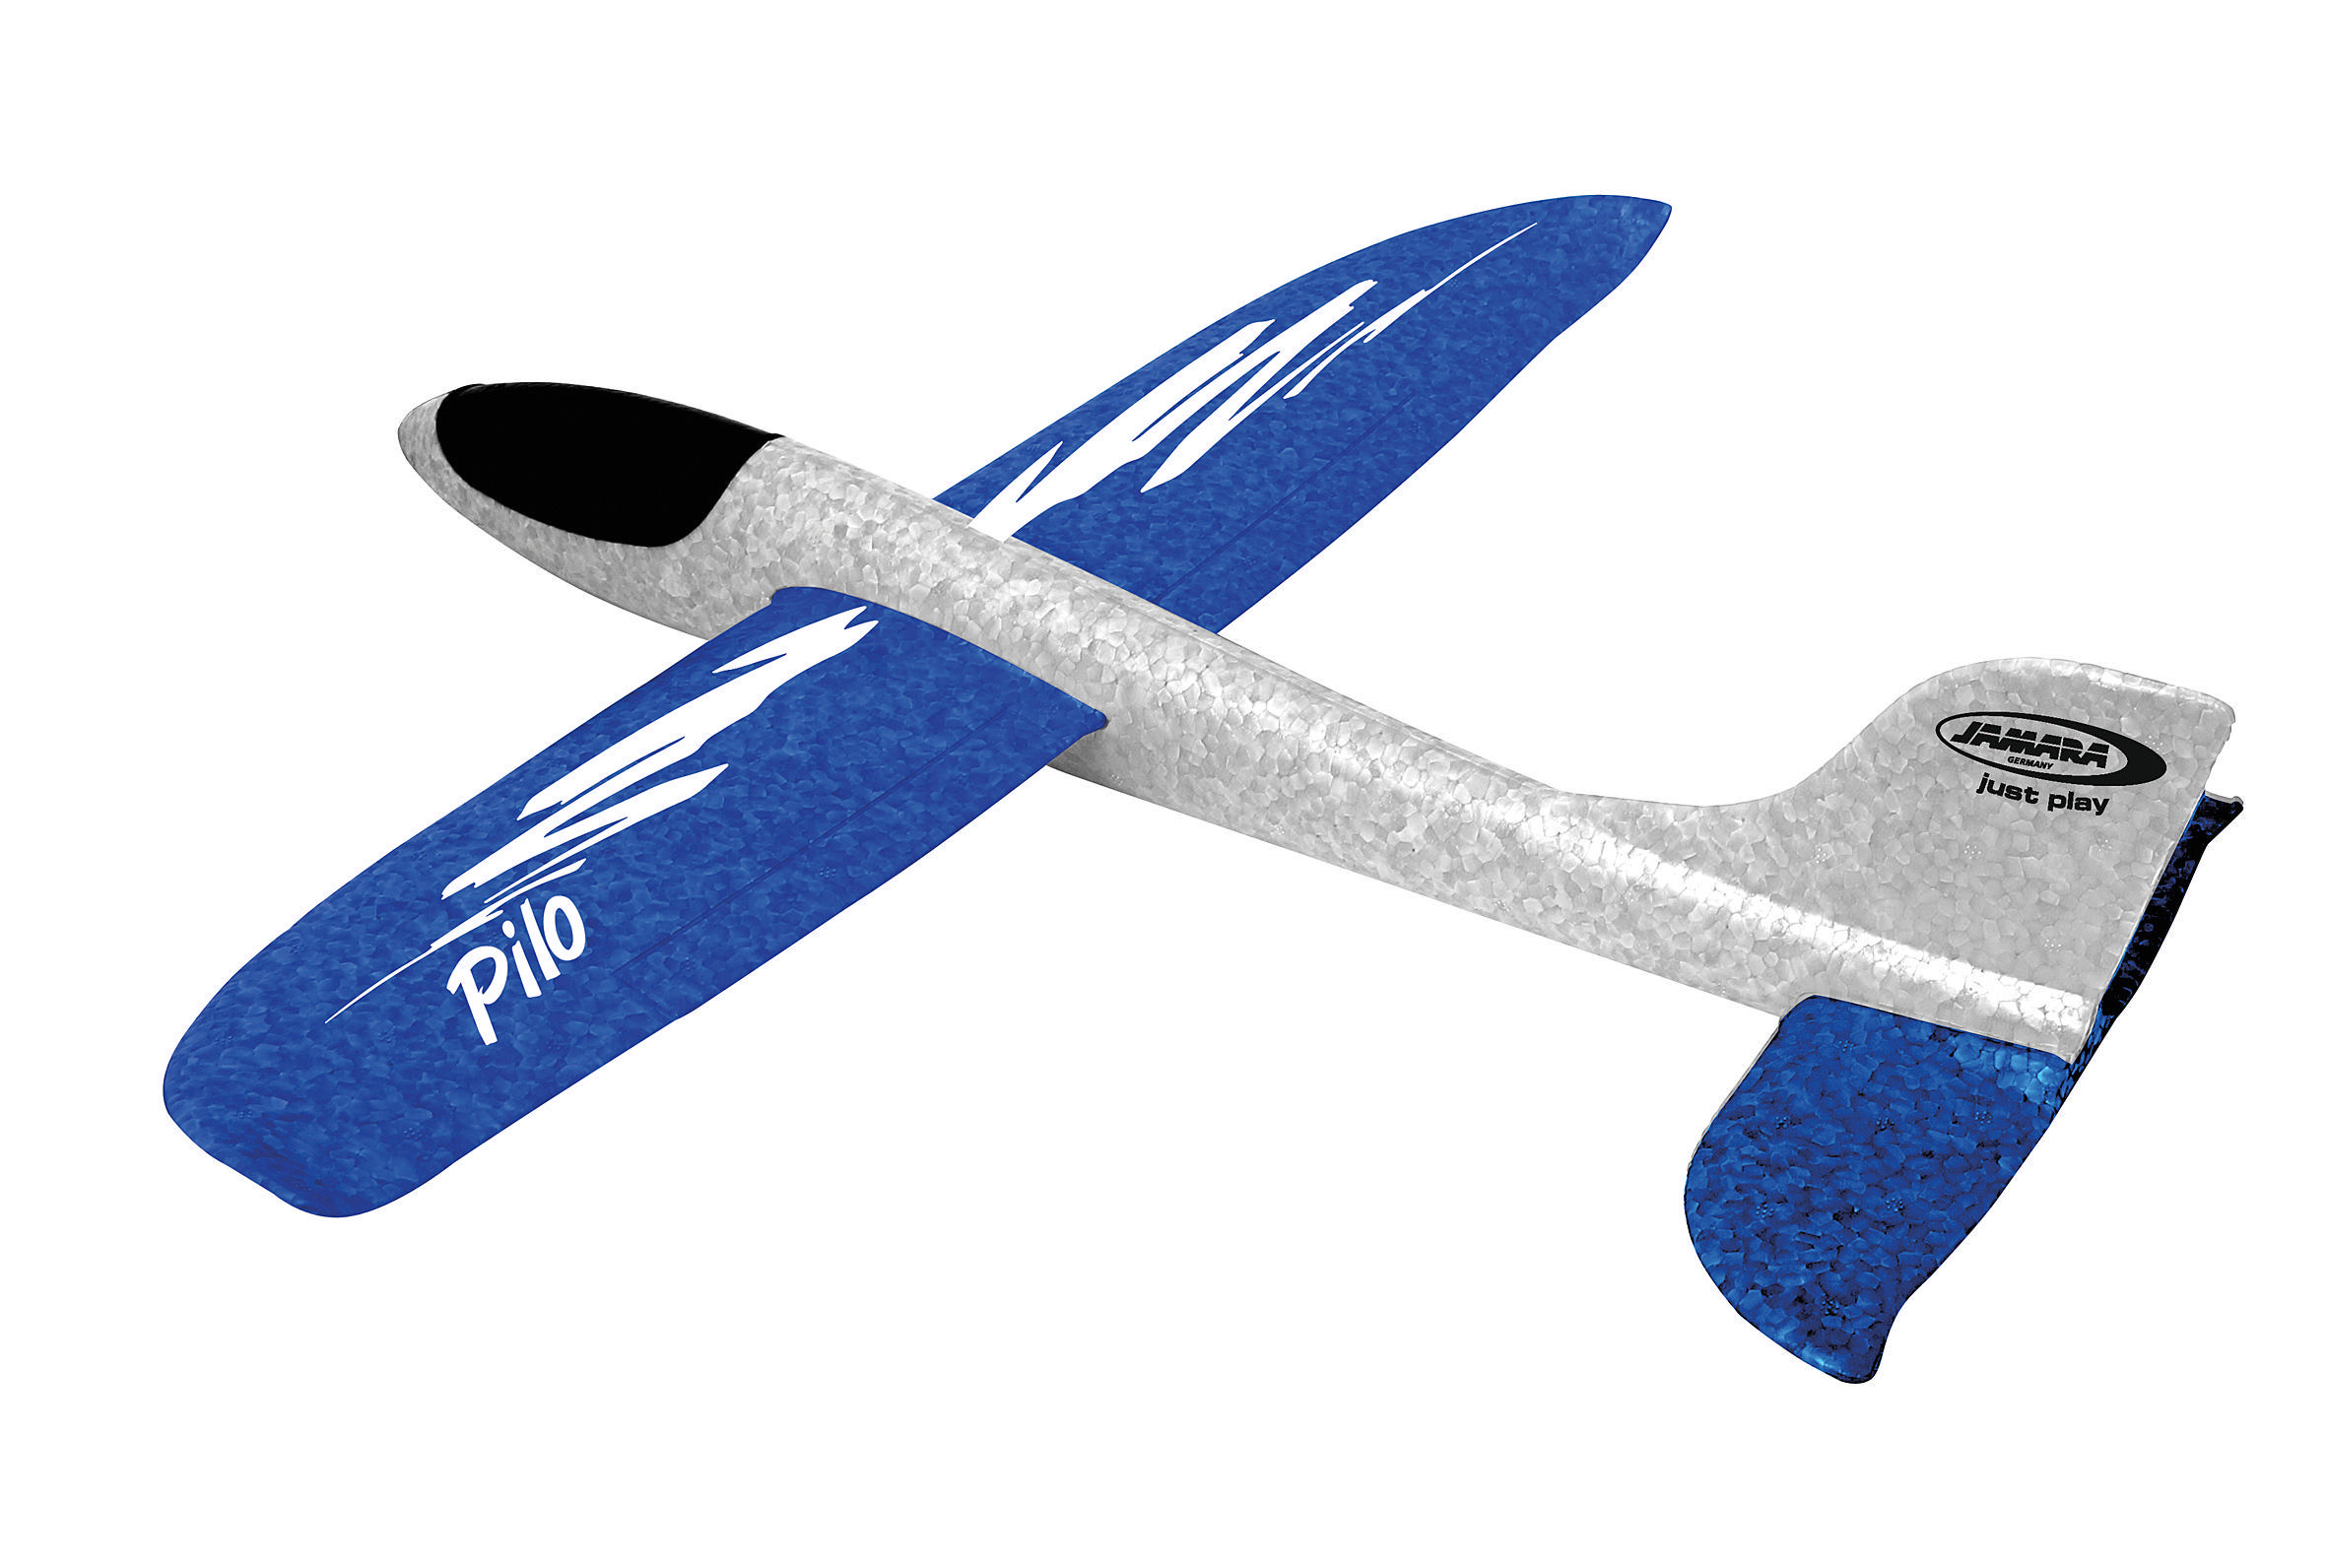 Pilo Schaumwurfgleiter Weiß/Blau KIDS JAMARA Spielzeugflugzeug